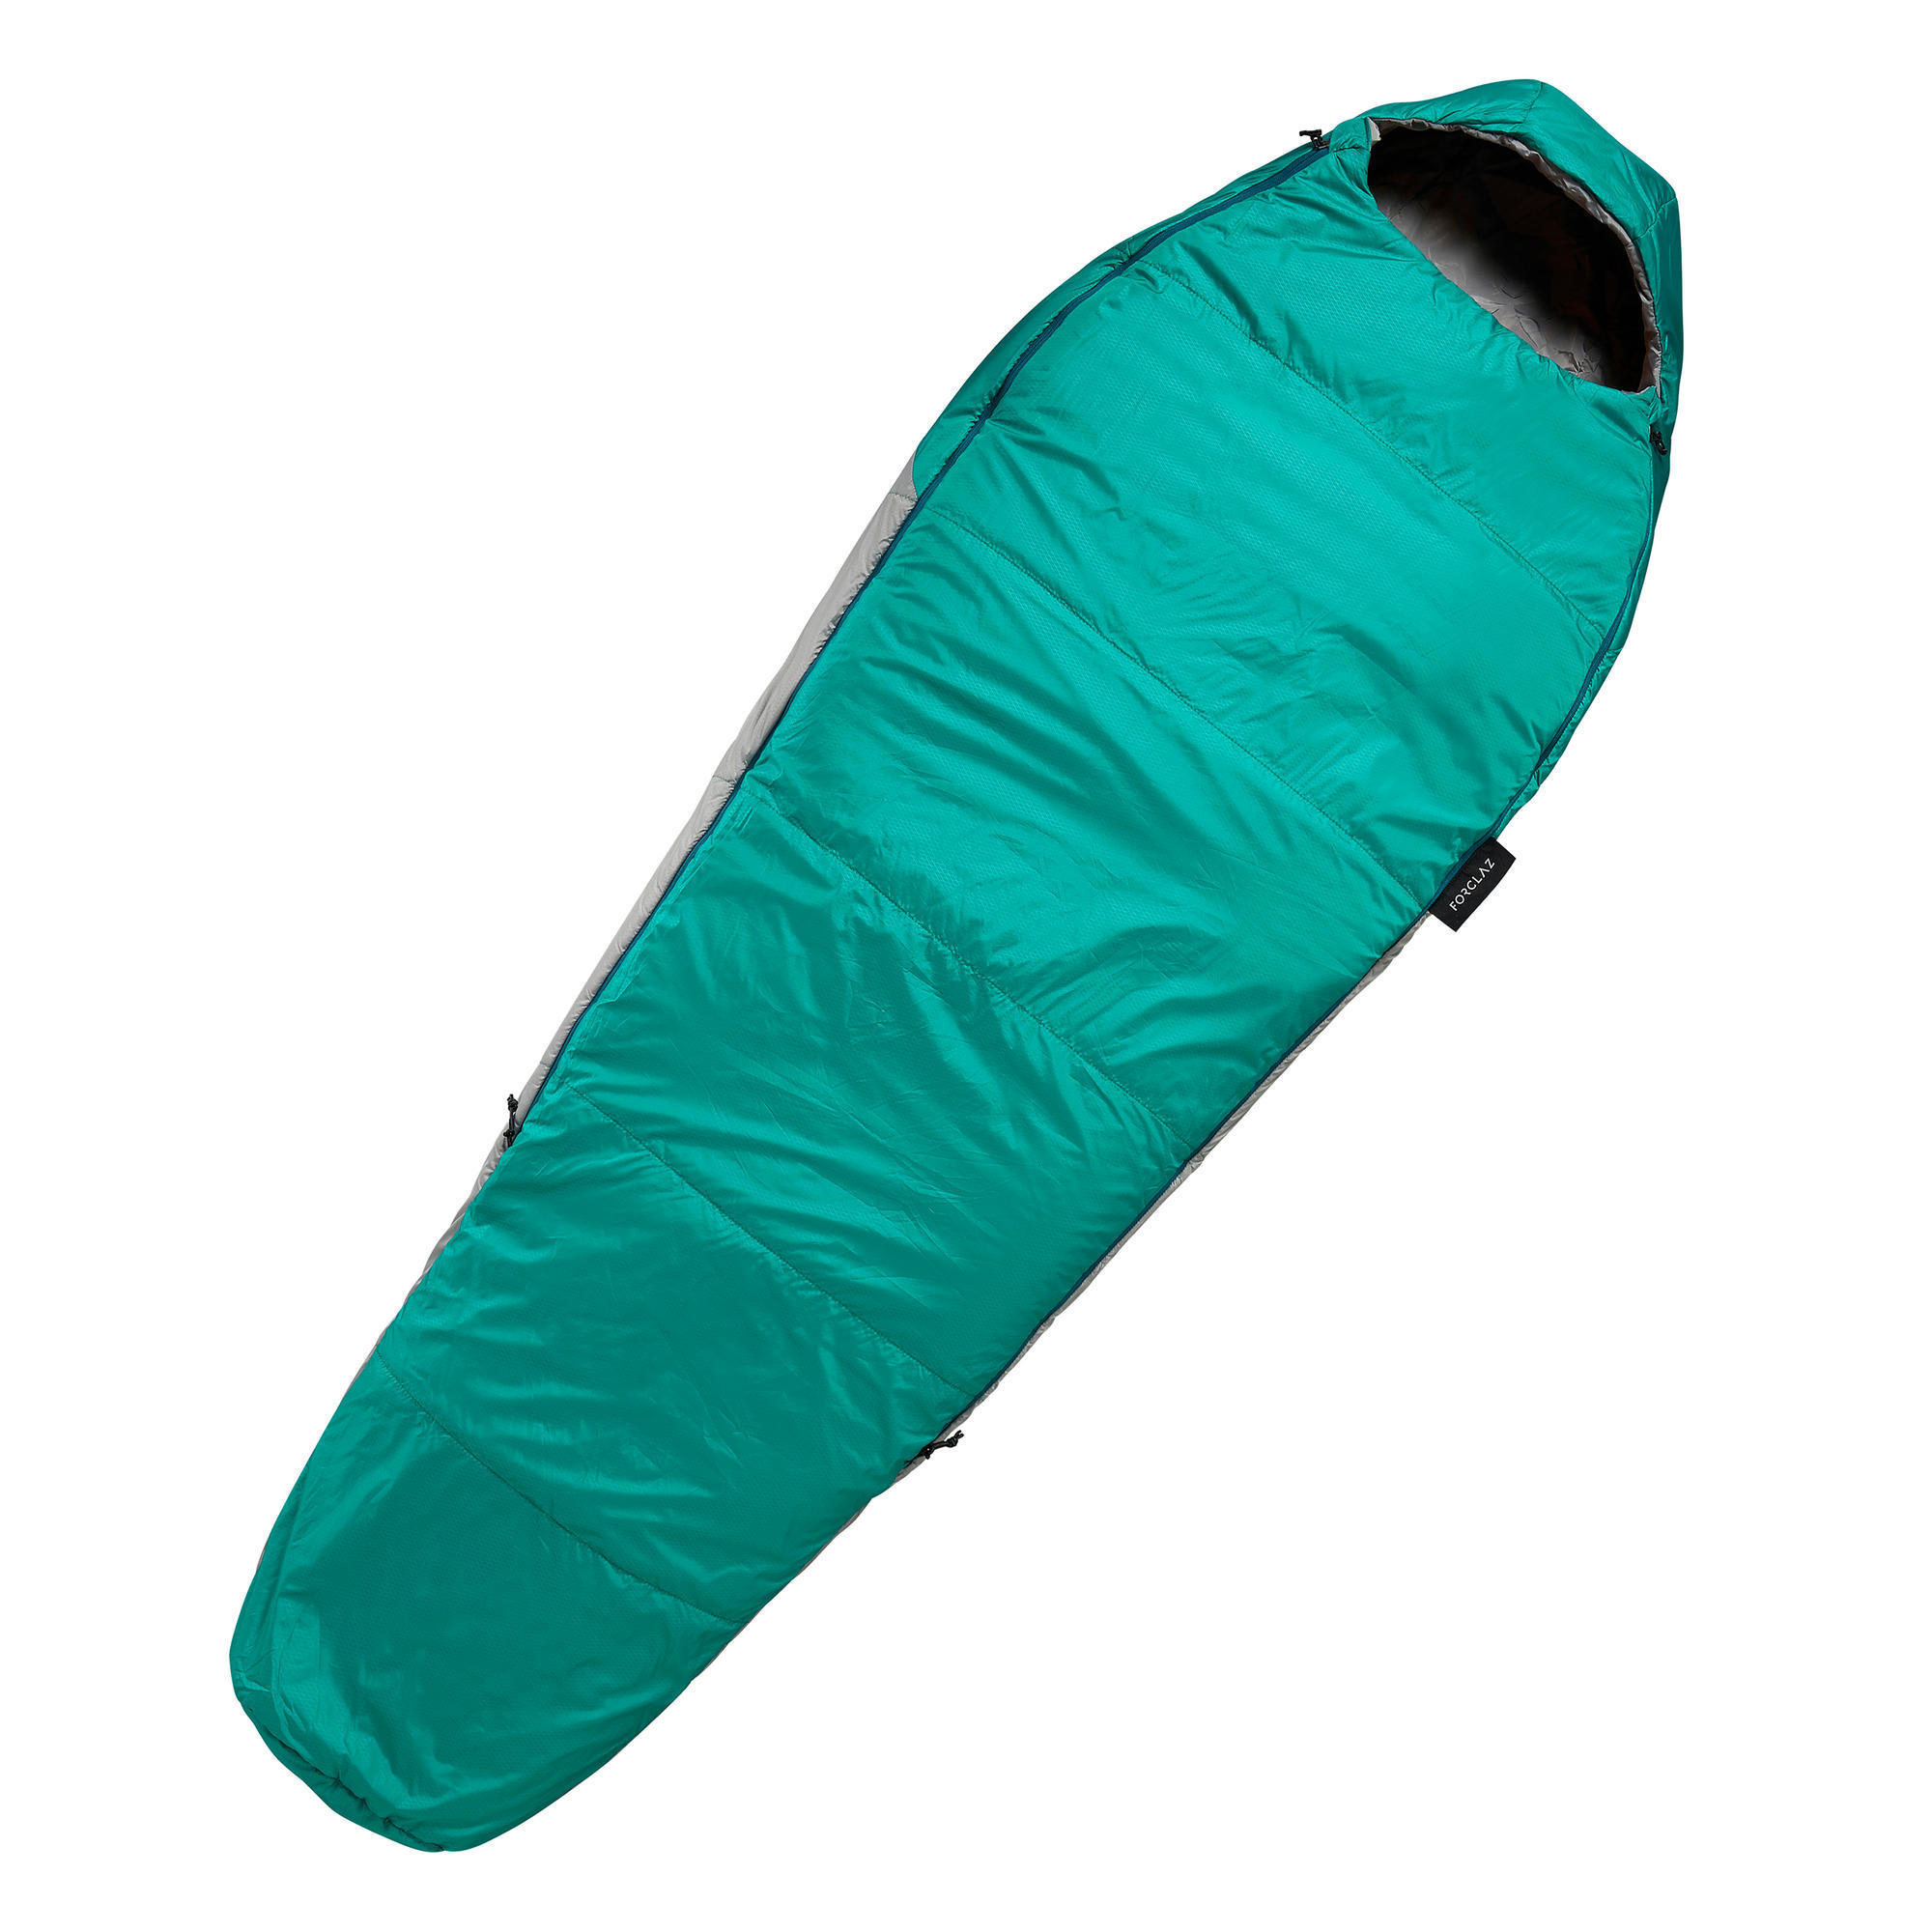 Sleeping Bags | Camping Sleeping Bags 